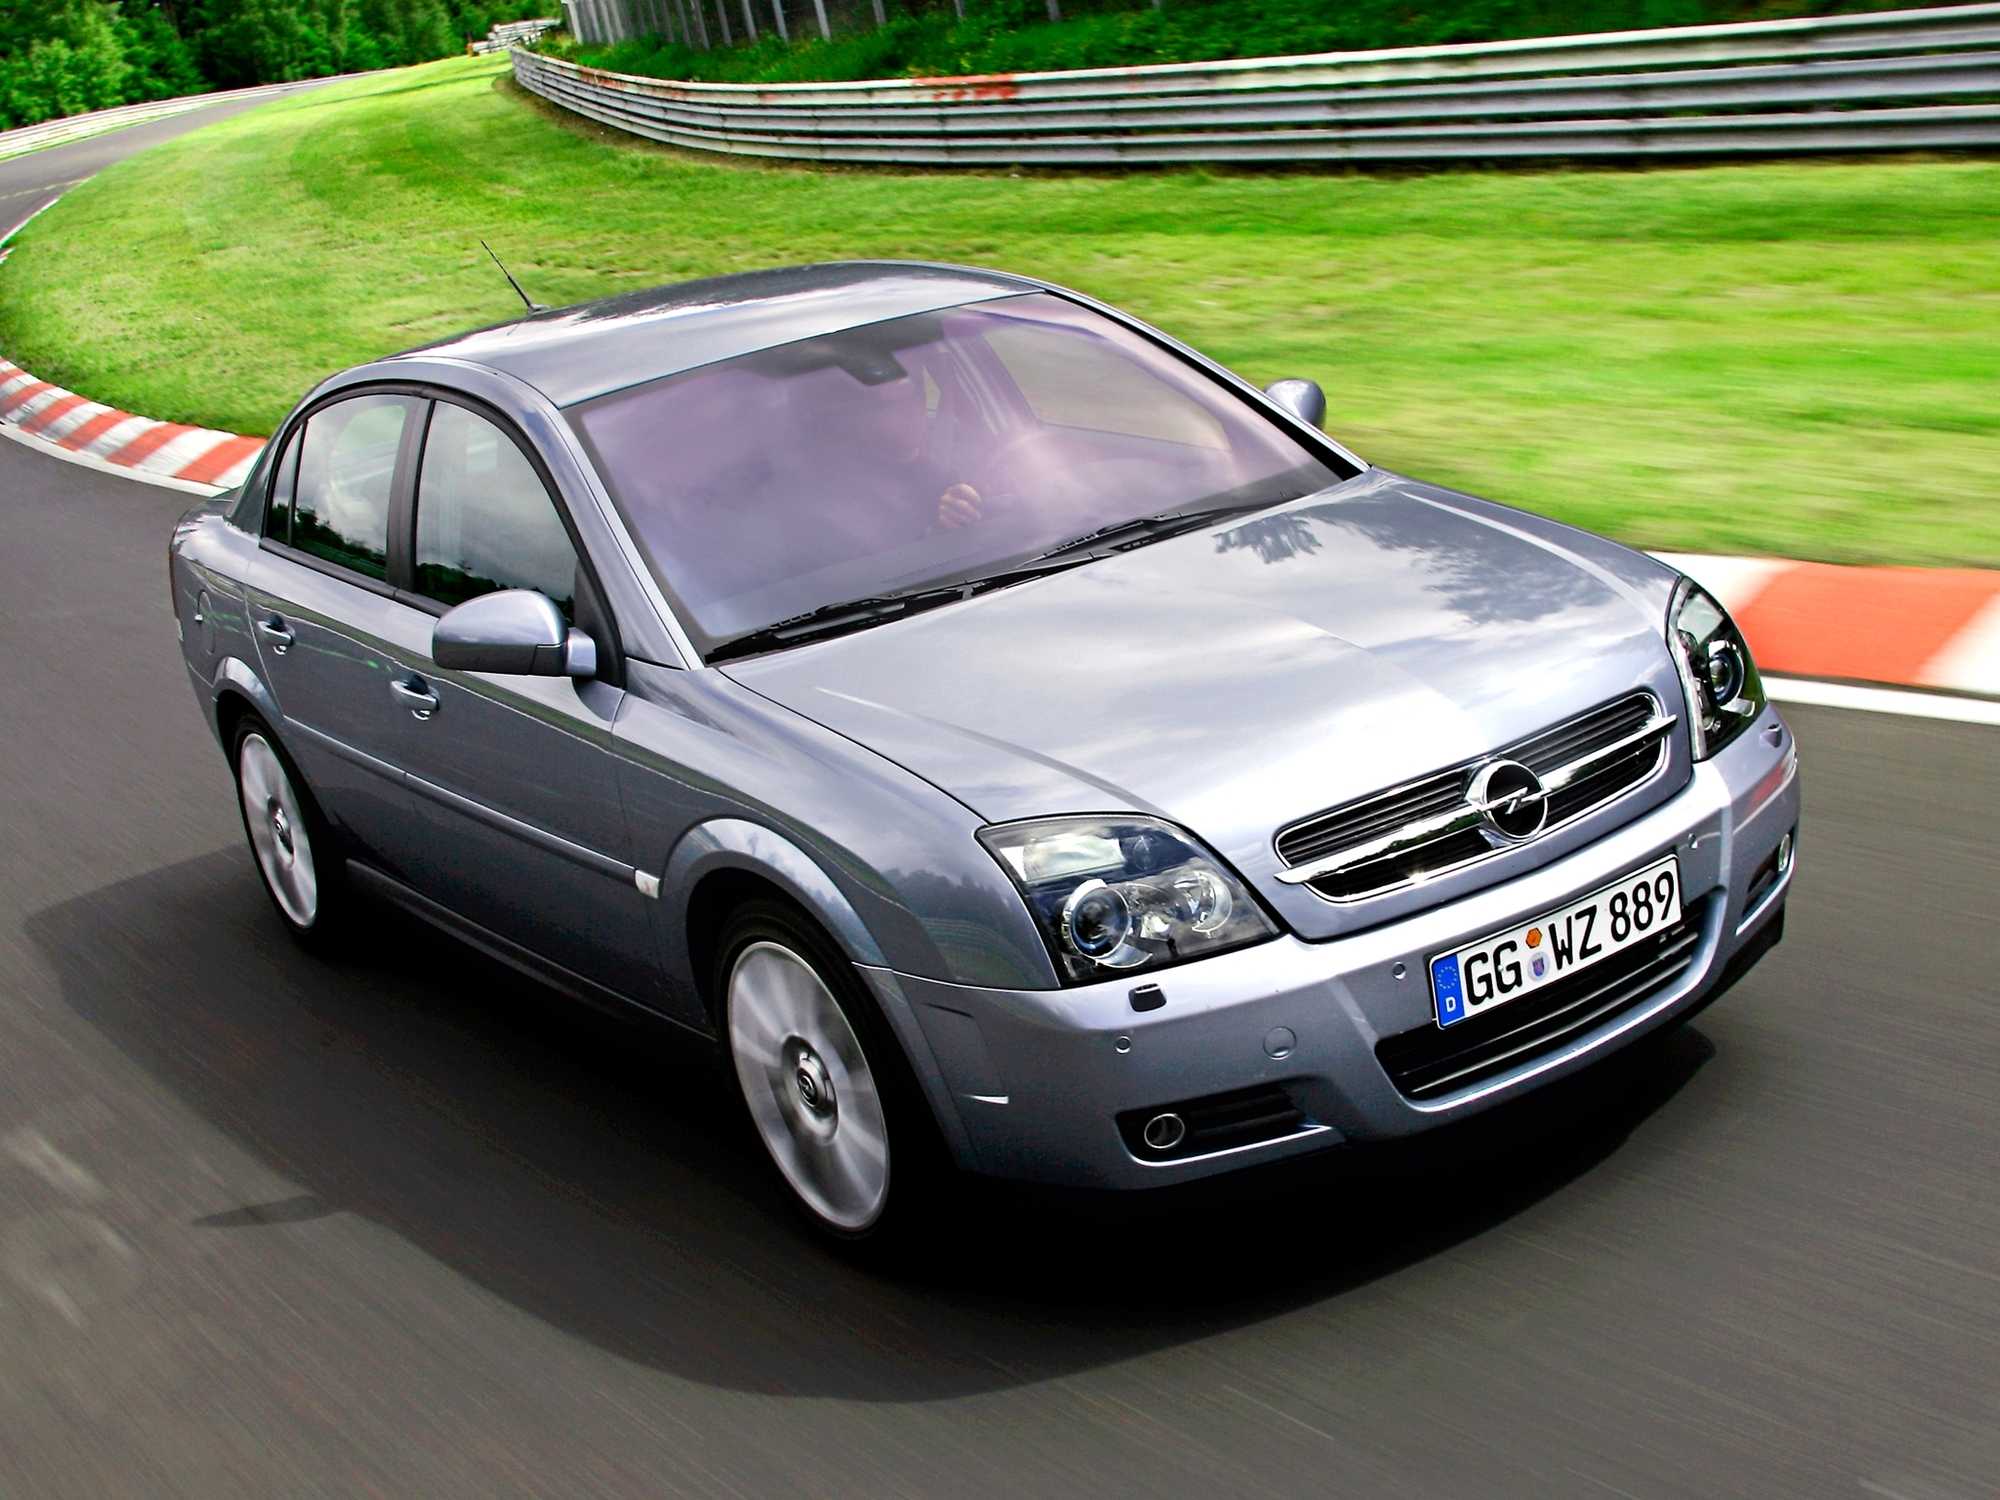 Автомобиль вектра б. Opel Vectra c 2002. Опель Вектра ц 2002. Опель Вектра с 2008 2.2. Опель Вектра с 2002 2.2.